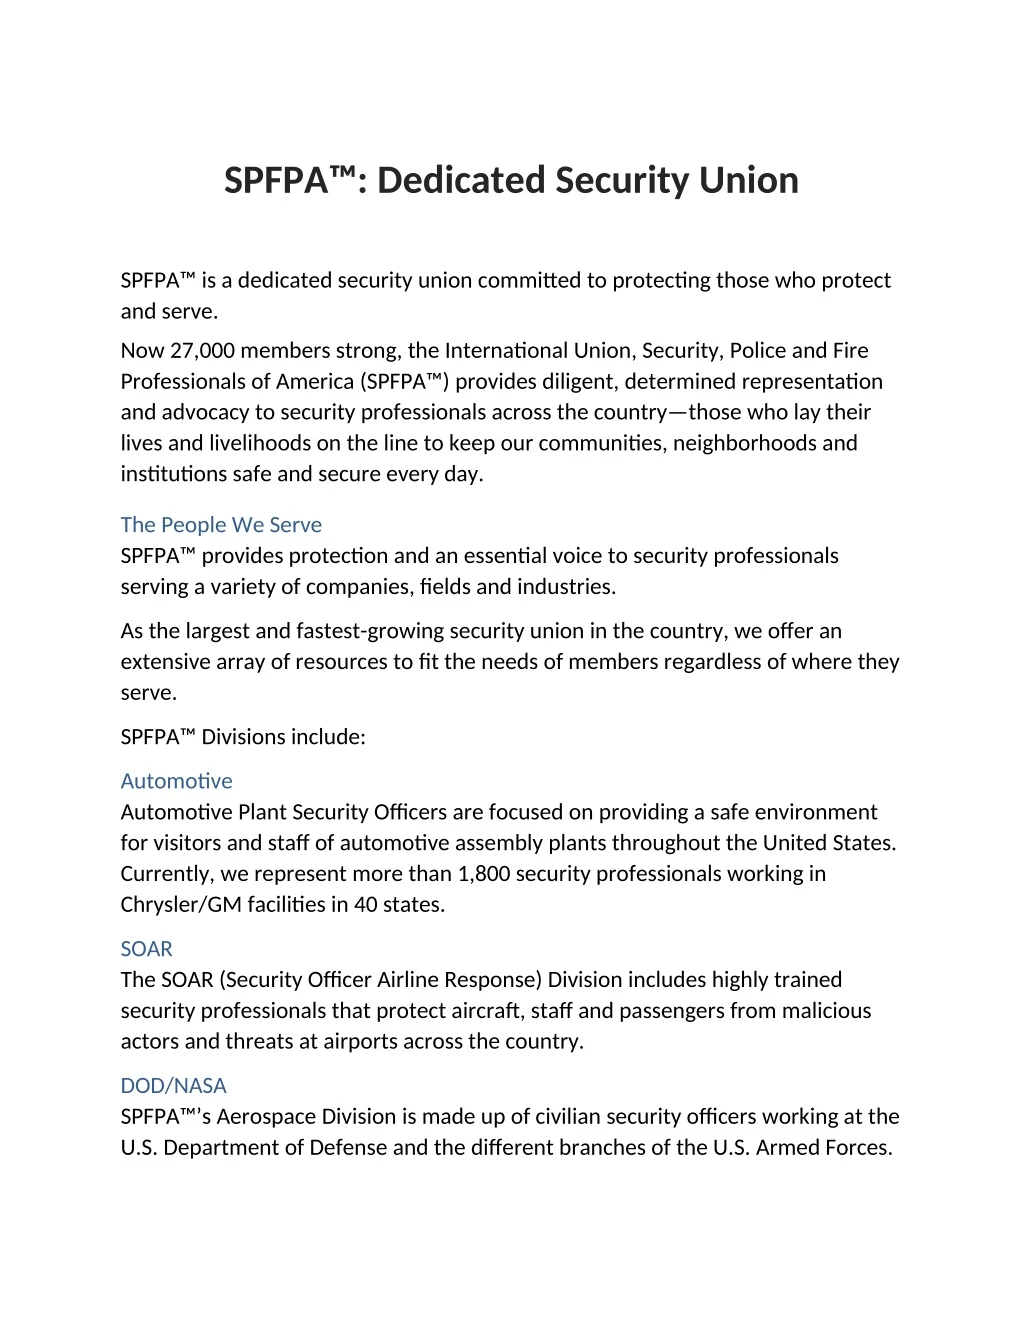 spfpa dedicated security union